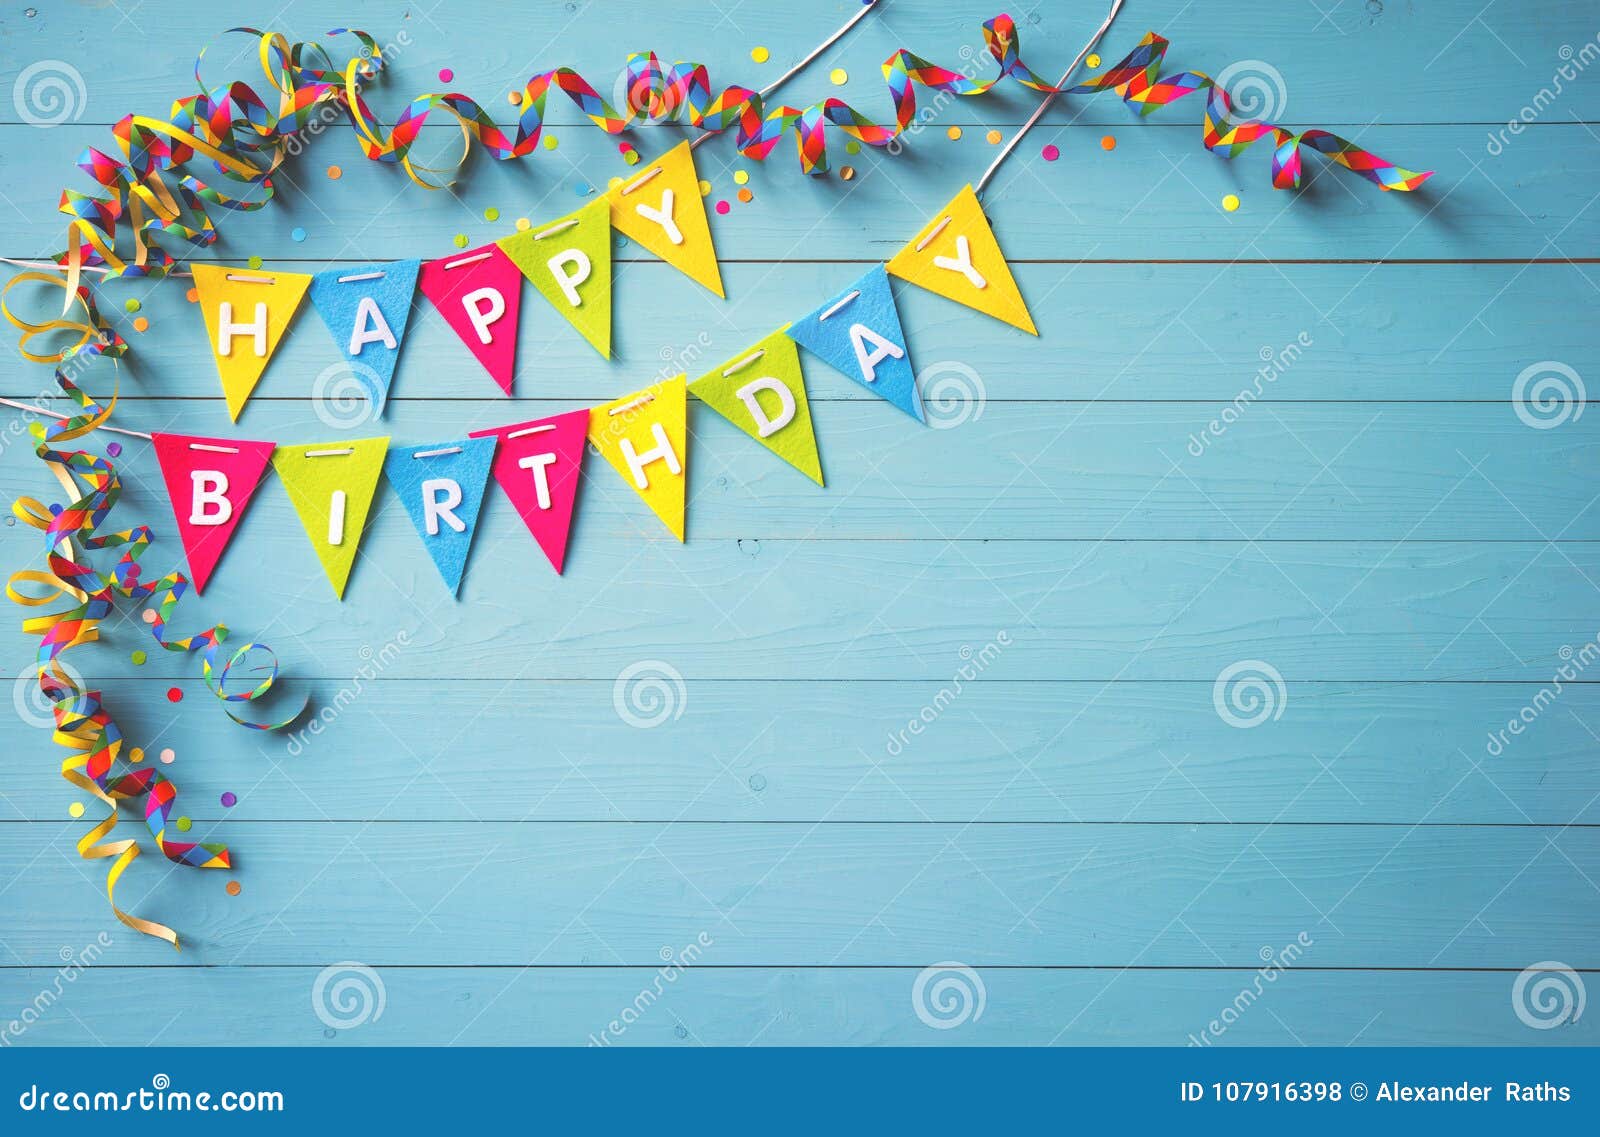 Bạn muốn có một không gian sinh nhật đầy màu sắc và vui tươi? Hãy thử sử dụng nền phông sinh nhật đầy màu sắc này. Với sự kết hợp hoàn hảo giữa màu sắc và hình ảnh sinh nhật độc đáo, bạn có thể tổ chức một bữa tiệc sinh nhật đầy ngọt ngào và đáng nhớ.